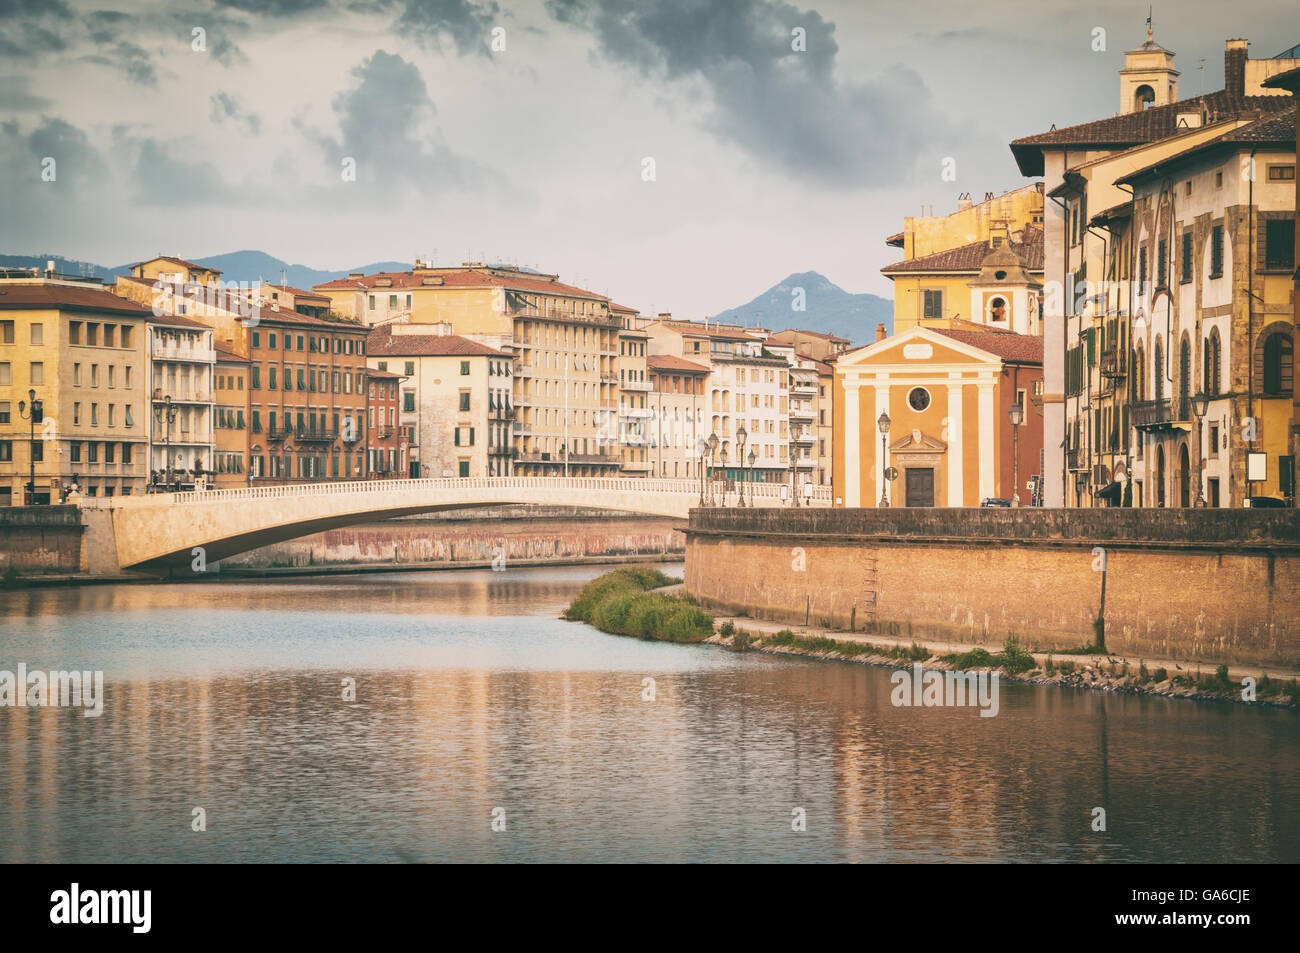 River Arno in Pisa, Italy. Stock Photo